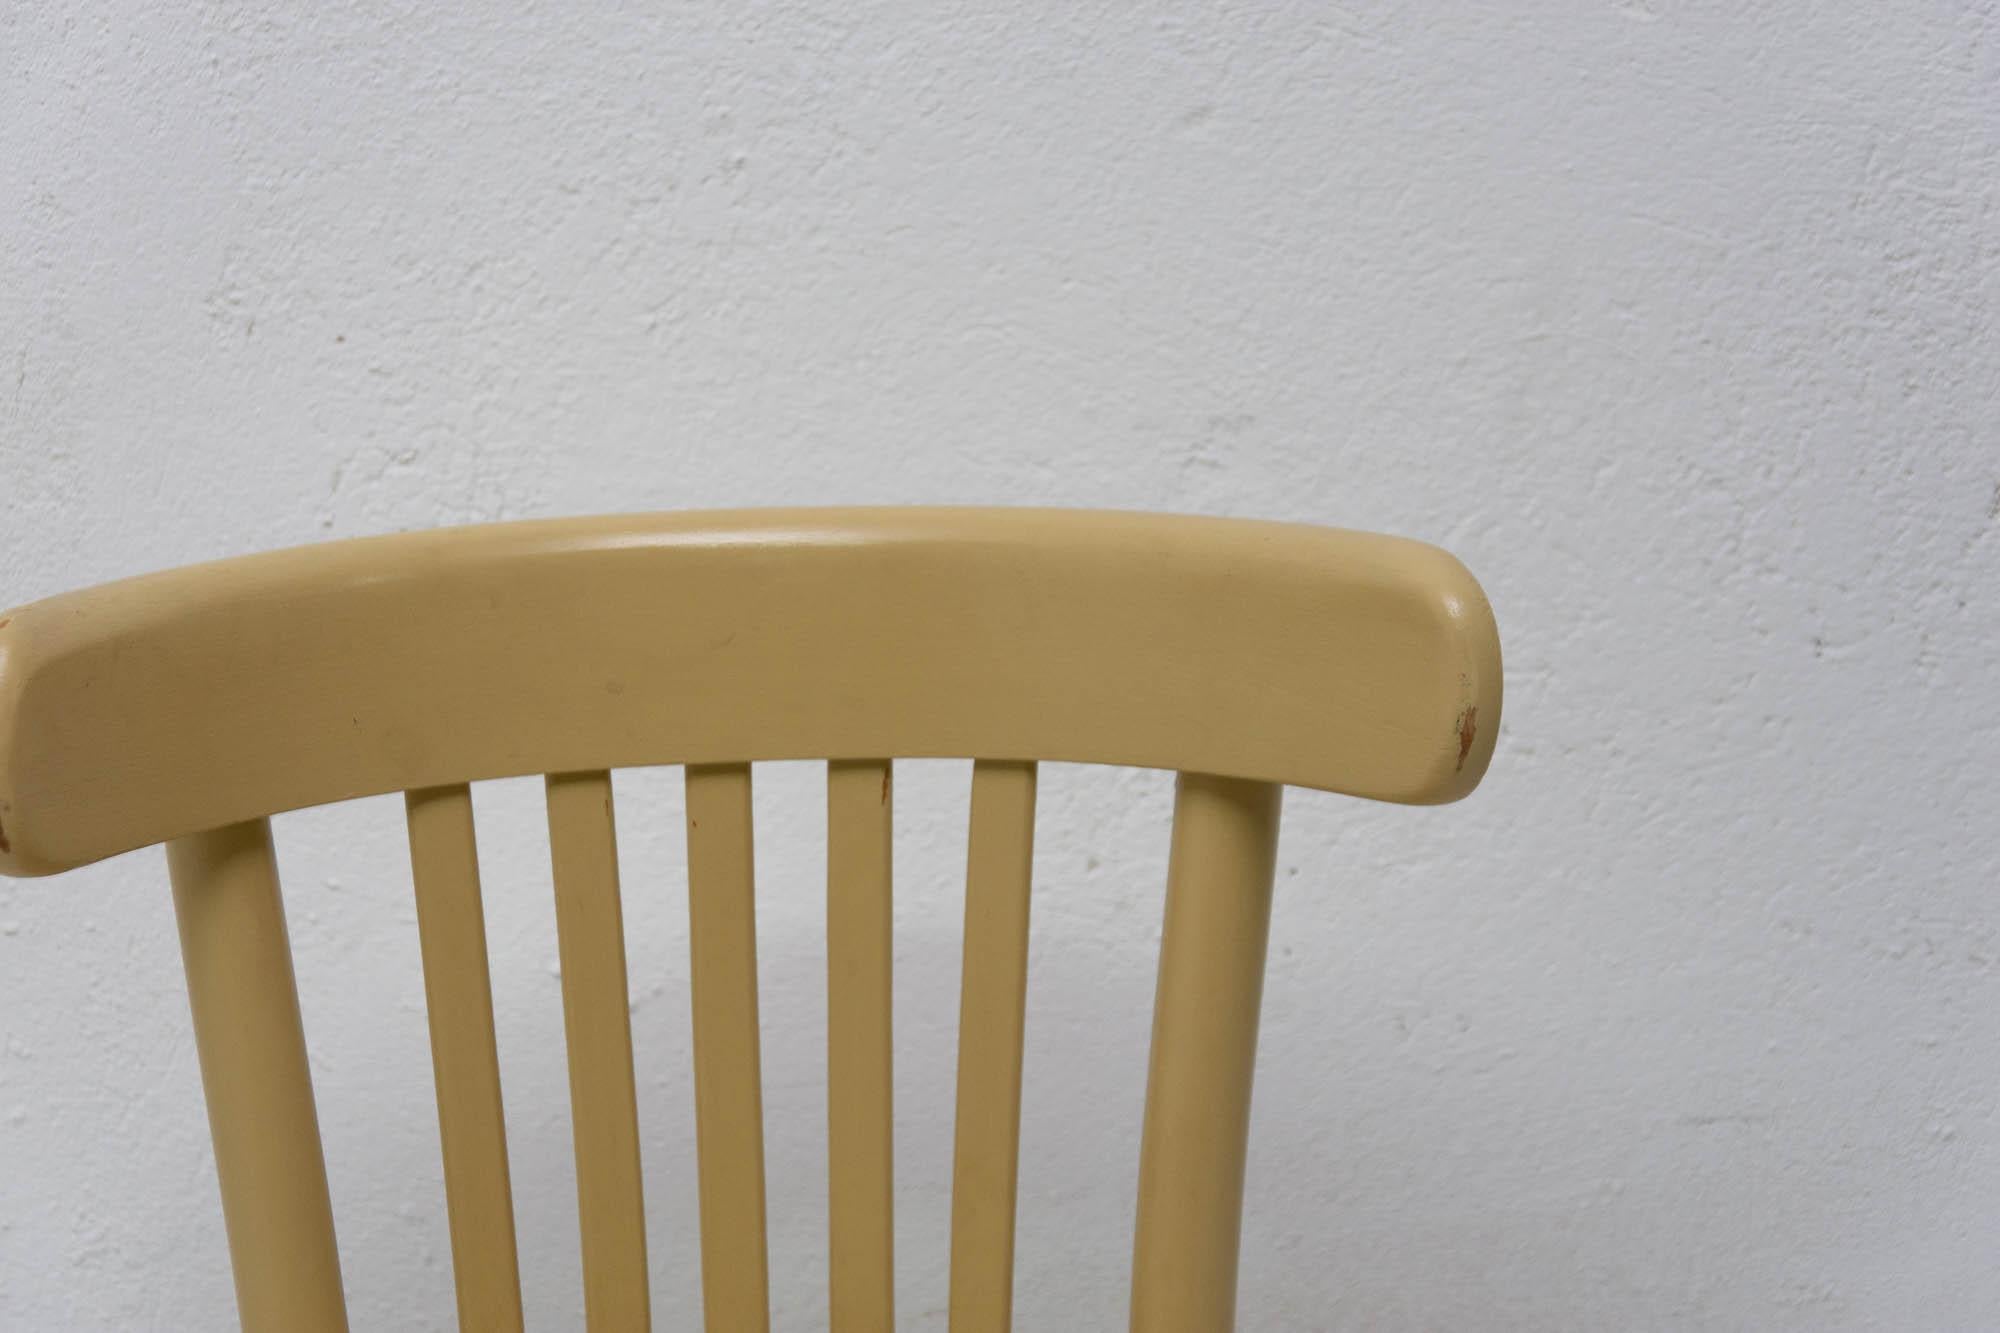 Czech Beech Bentwood Chair from Thonet, 1950s